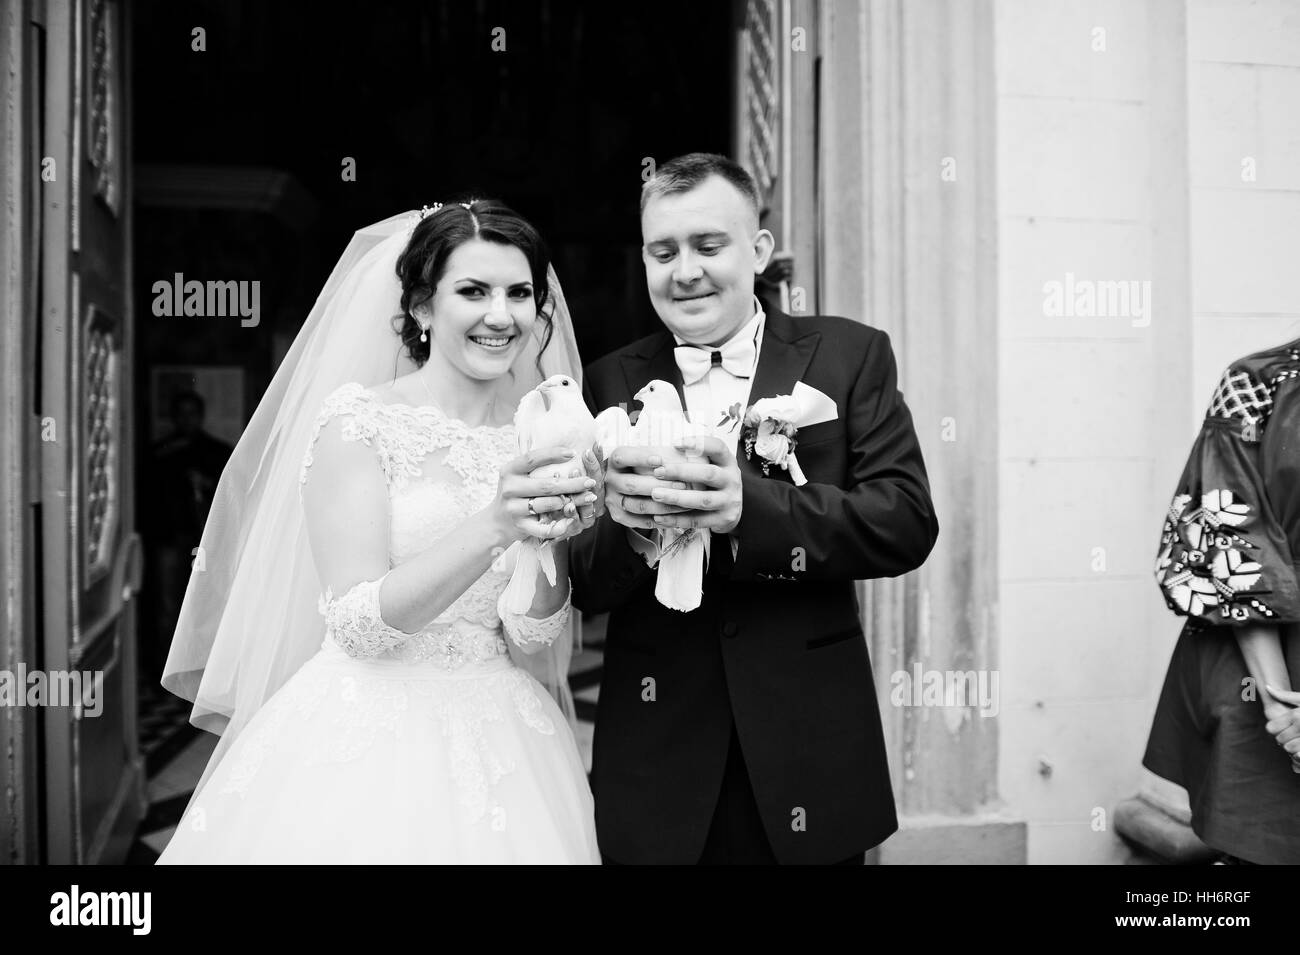 Glücklich lächelte Brautpaar mit Tauben auf Händen nach der Hochzeit Registrierung auf Kirche. Schwarz / weiß Foto Stockfoto